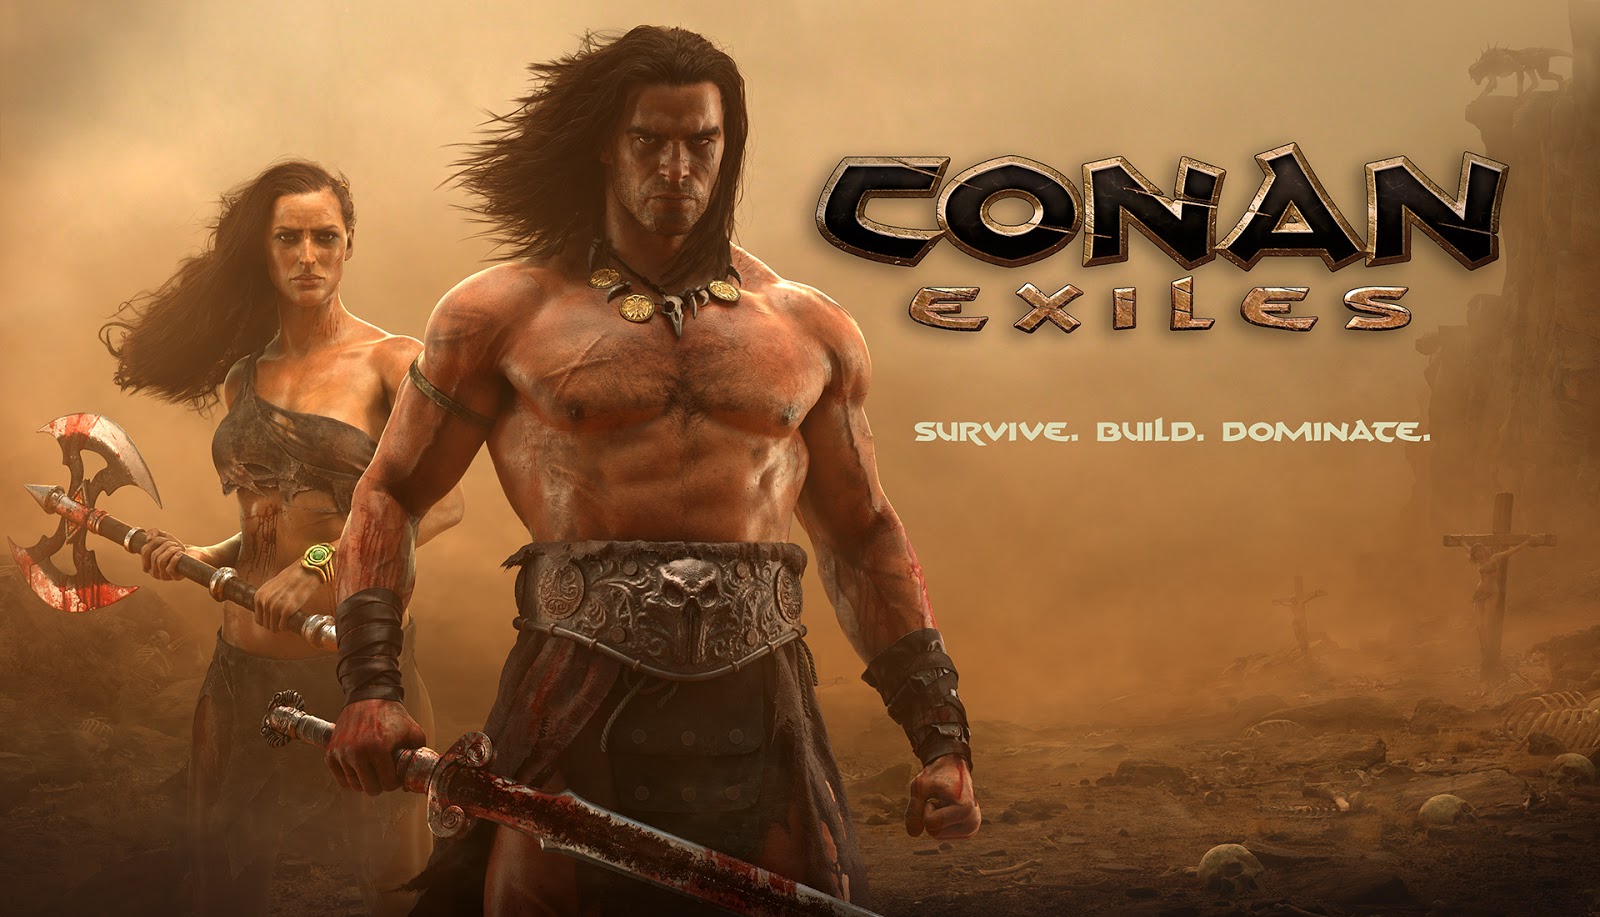 Categoria:Falta Tradução - Official Conan Exiles Wiki